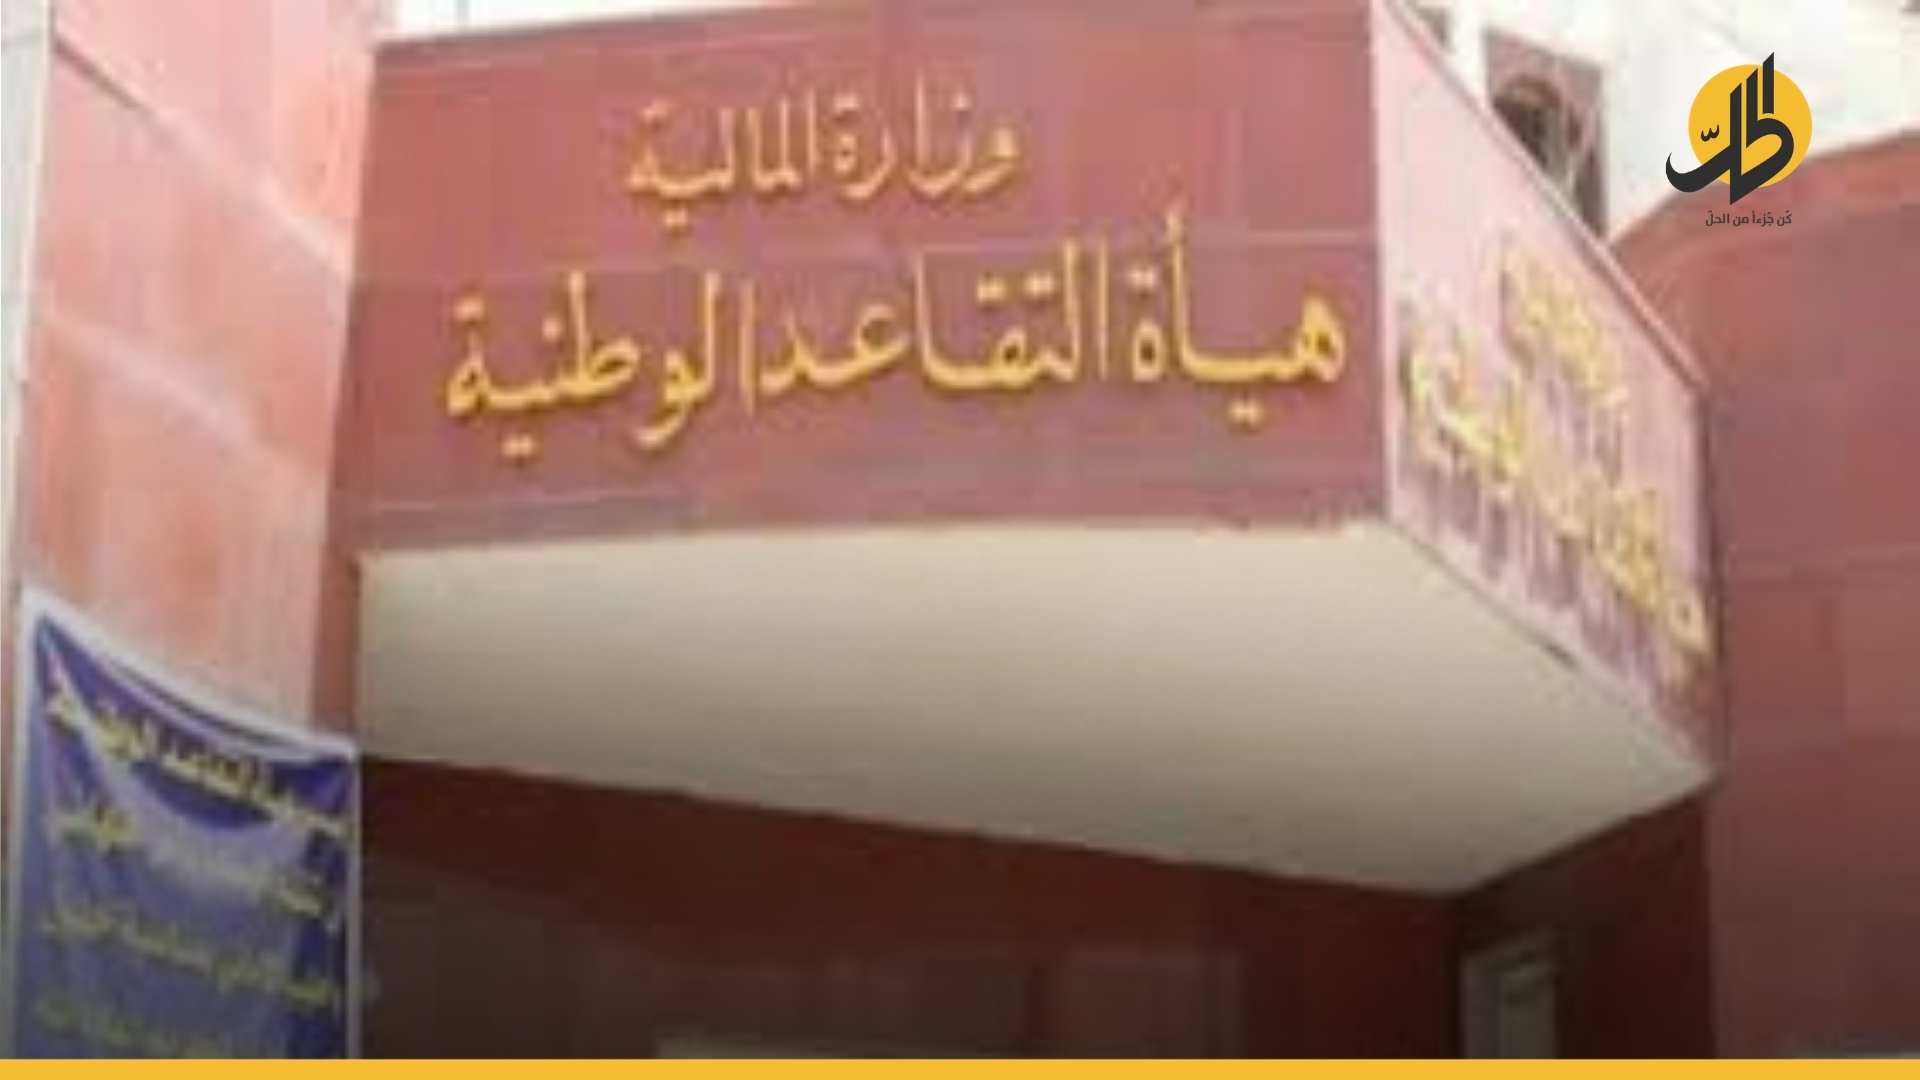 العراق: الكشف عن وجود رواتب لأكثر من 45 ألف متقاعد غير مستحق